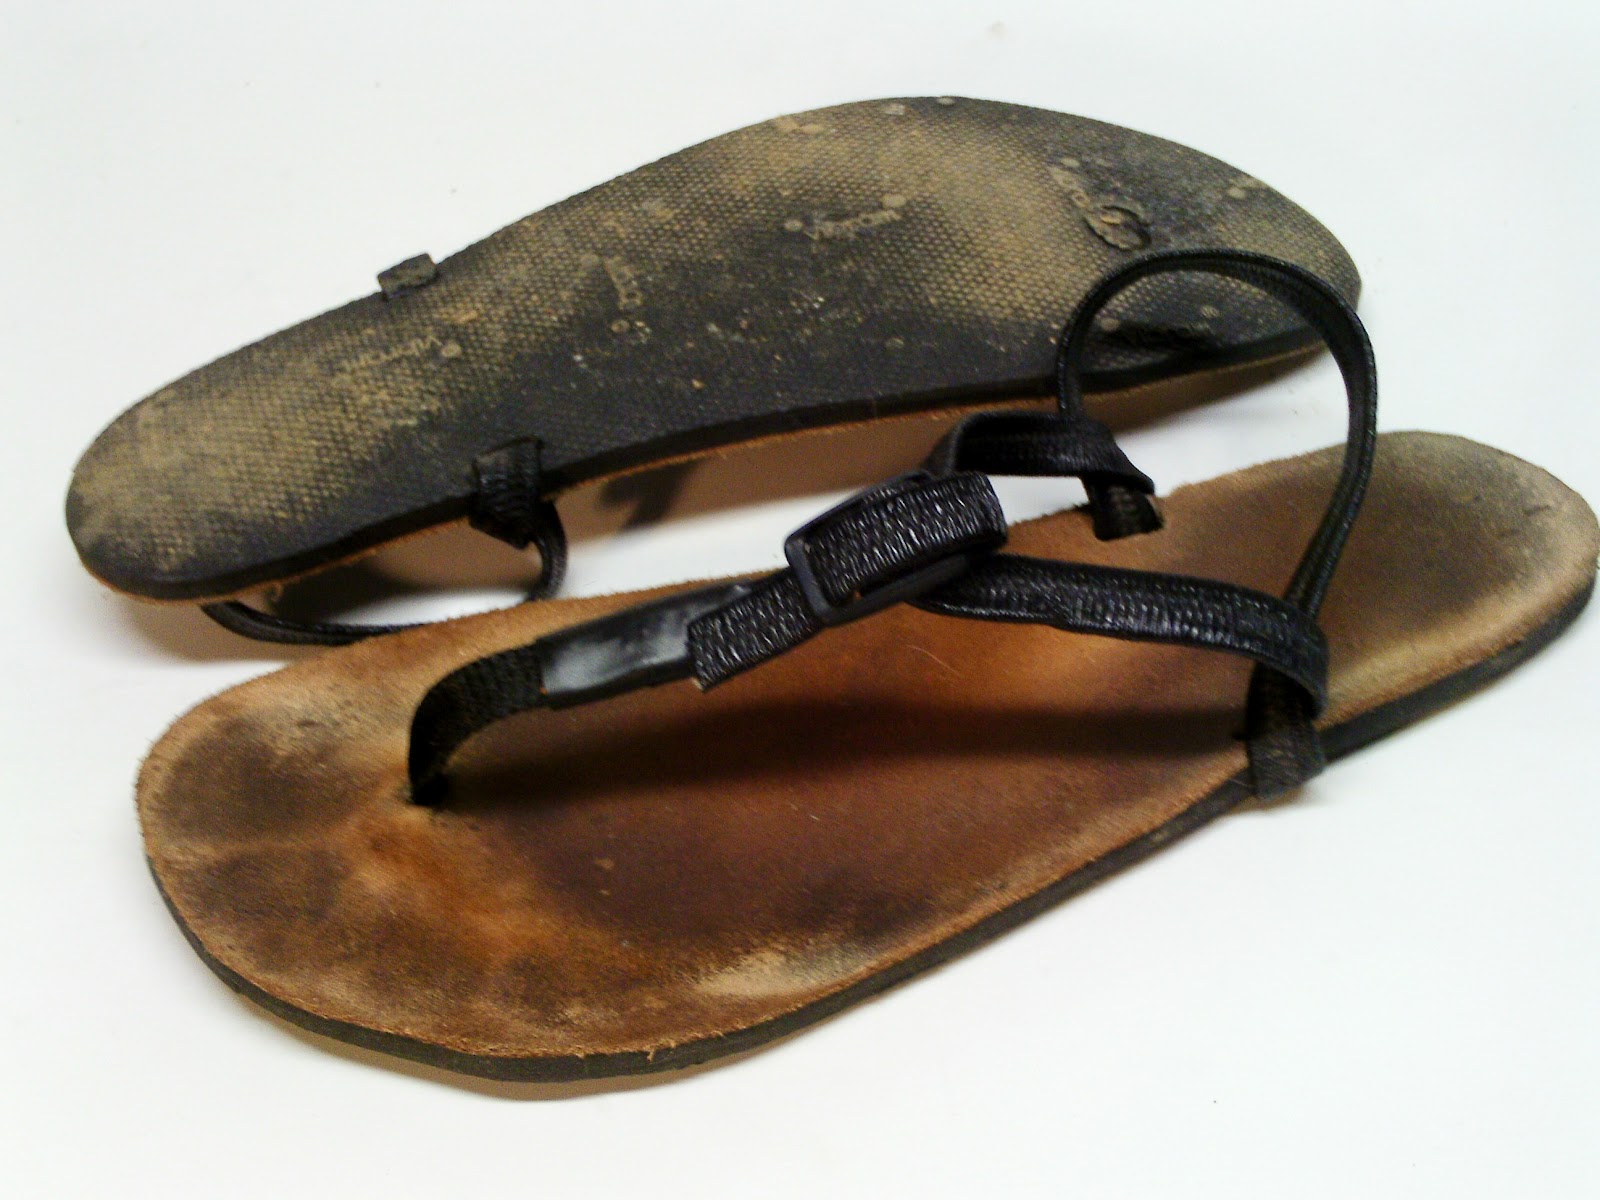 Worn sandals